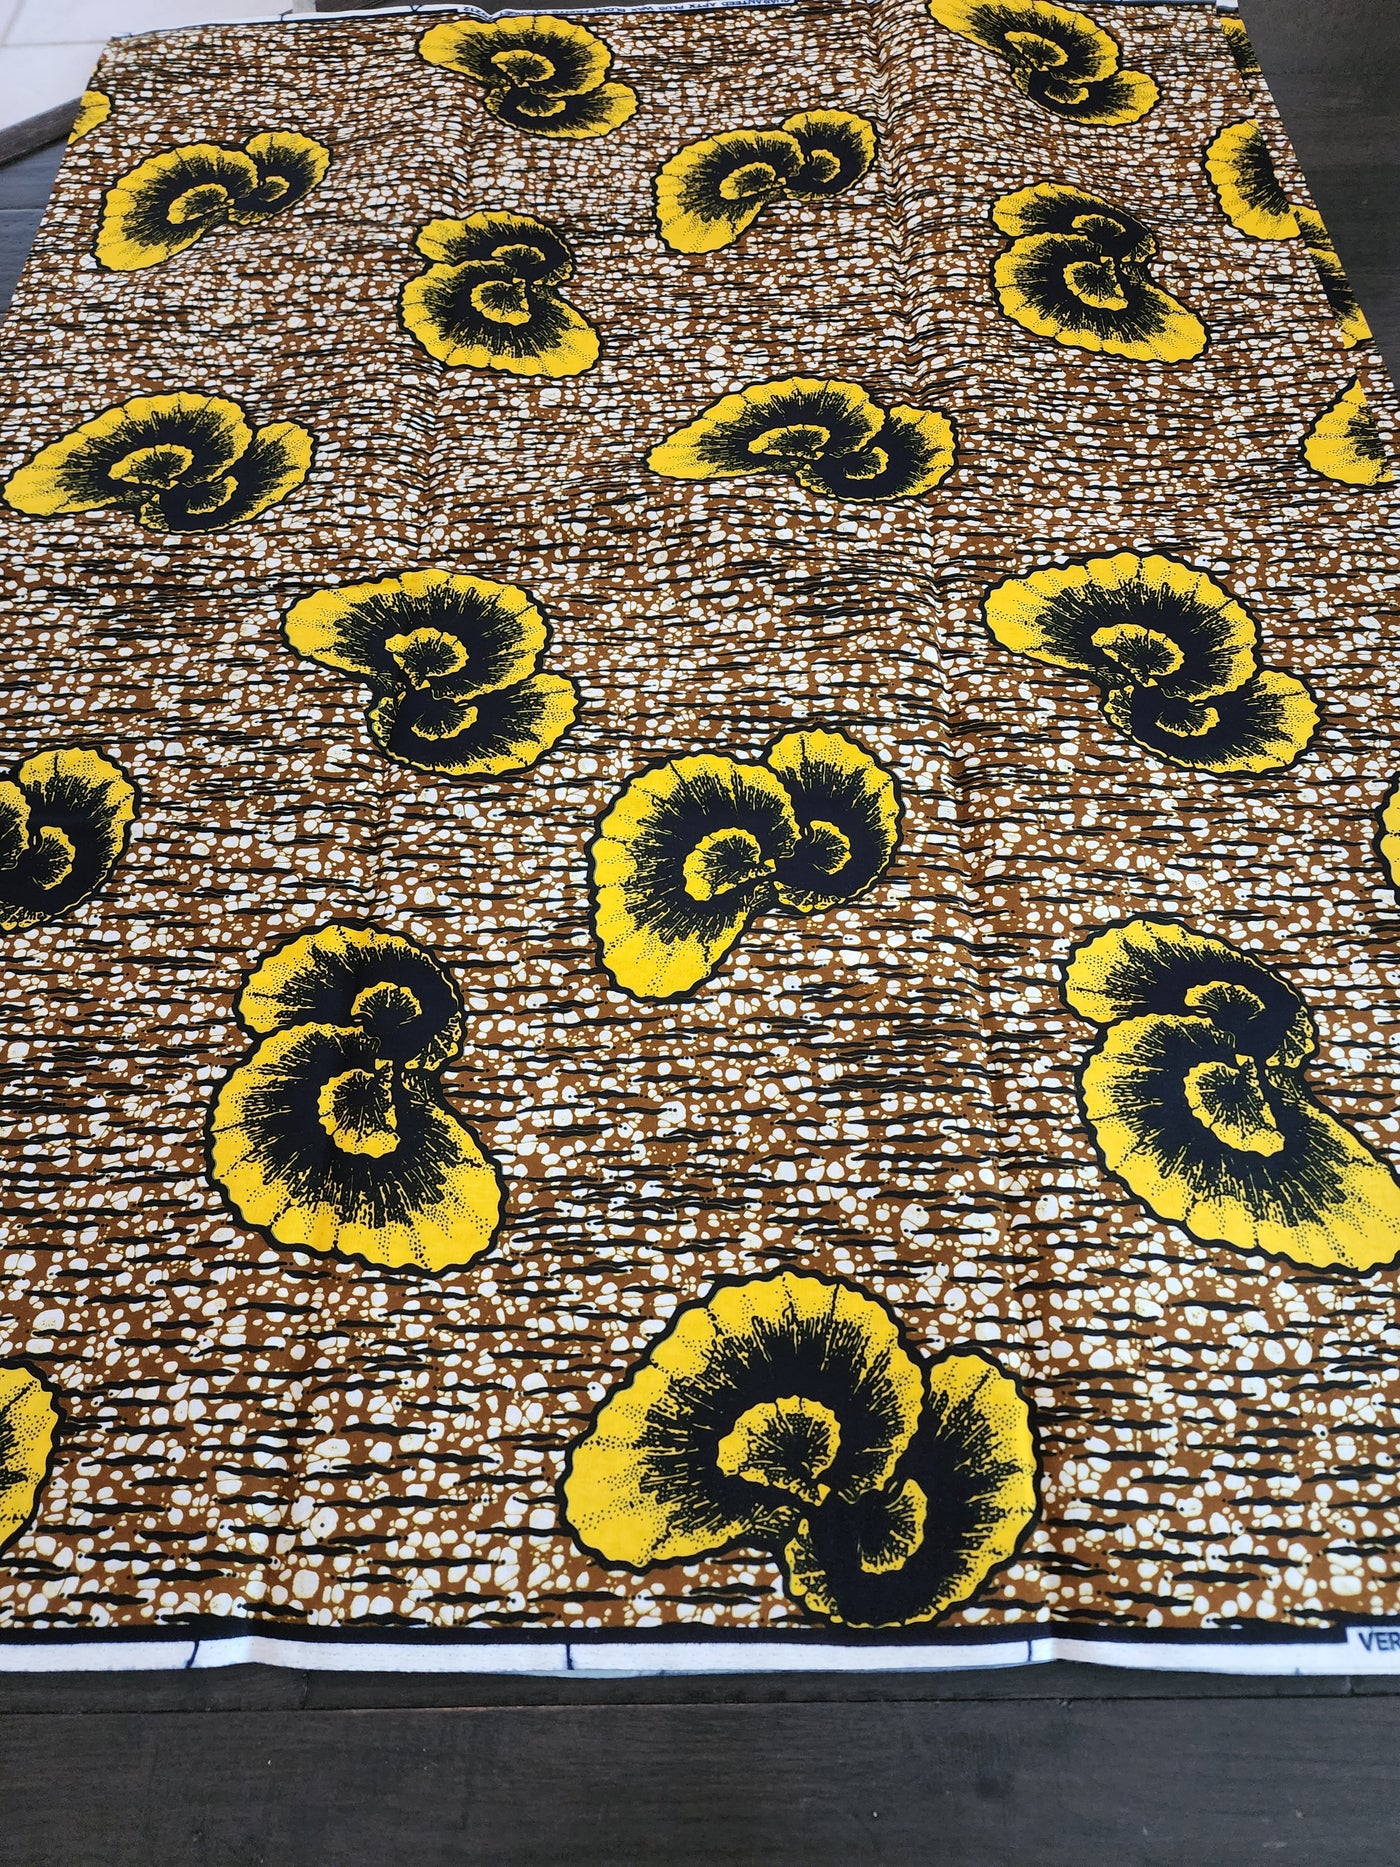 Brown and Yellow Ankara Fabric, ACS0445